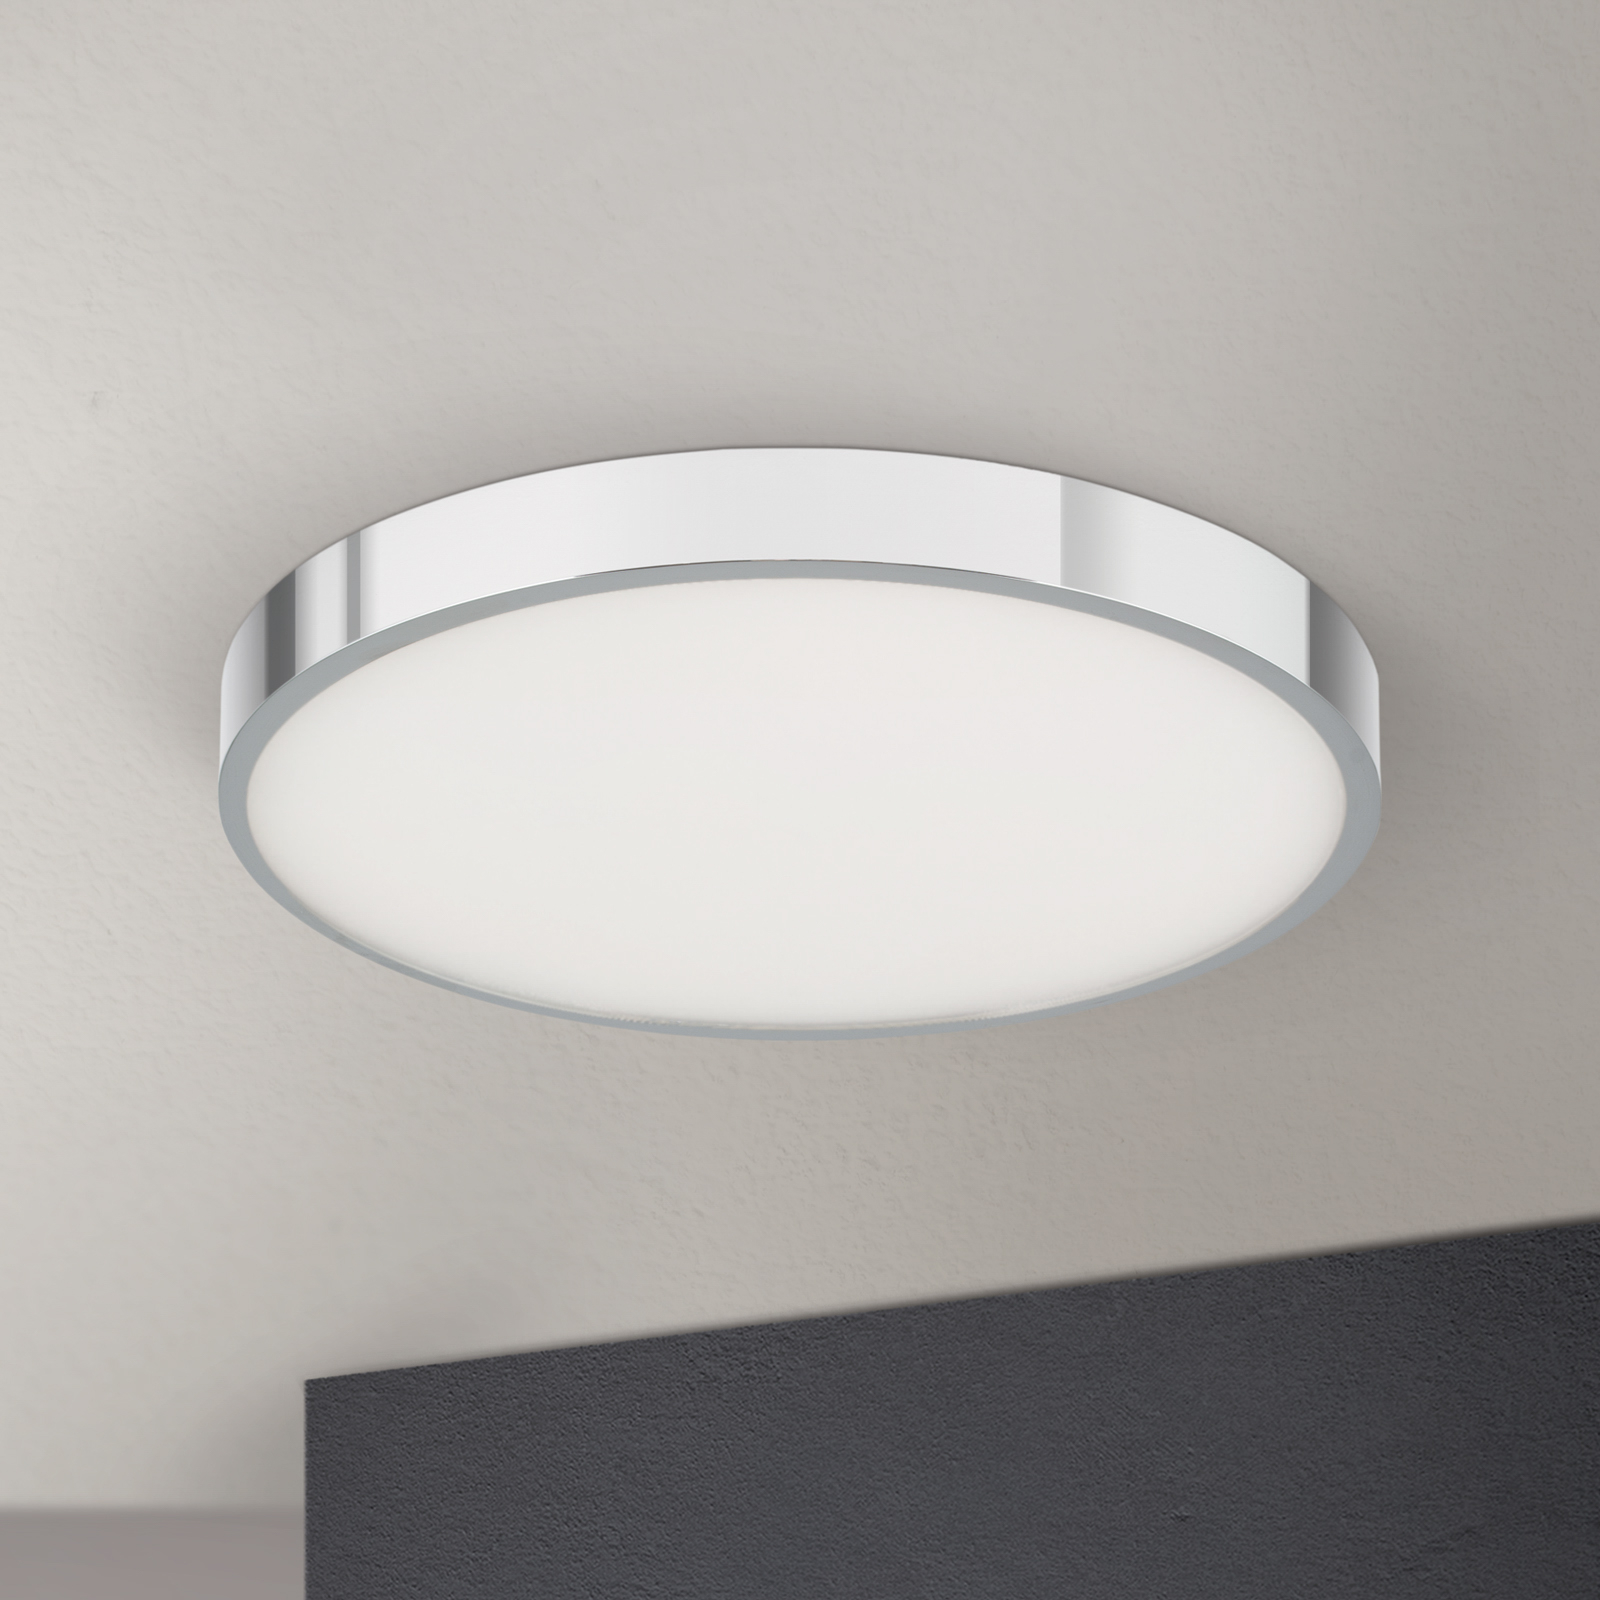 LED plafondlamp Bully, chroom, Ø 28 cm